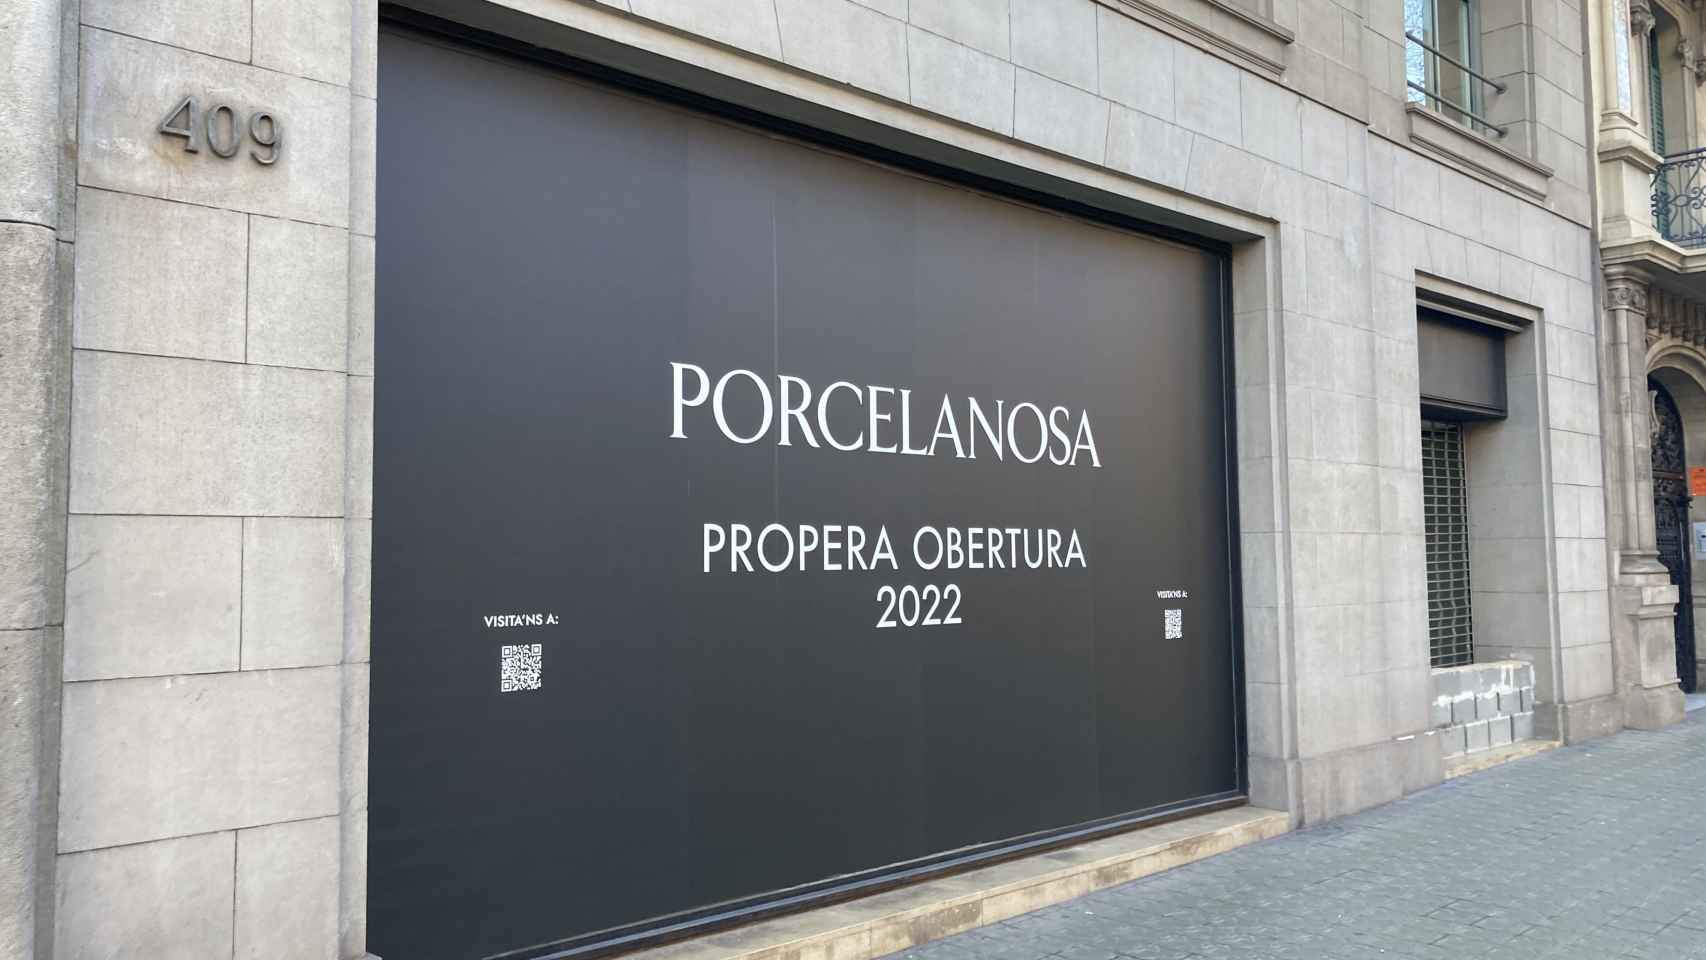 Fachada de futuro comercio de Porcelanosa ubicado en la Diagonal de Barcelona / METRÓPOLI